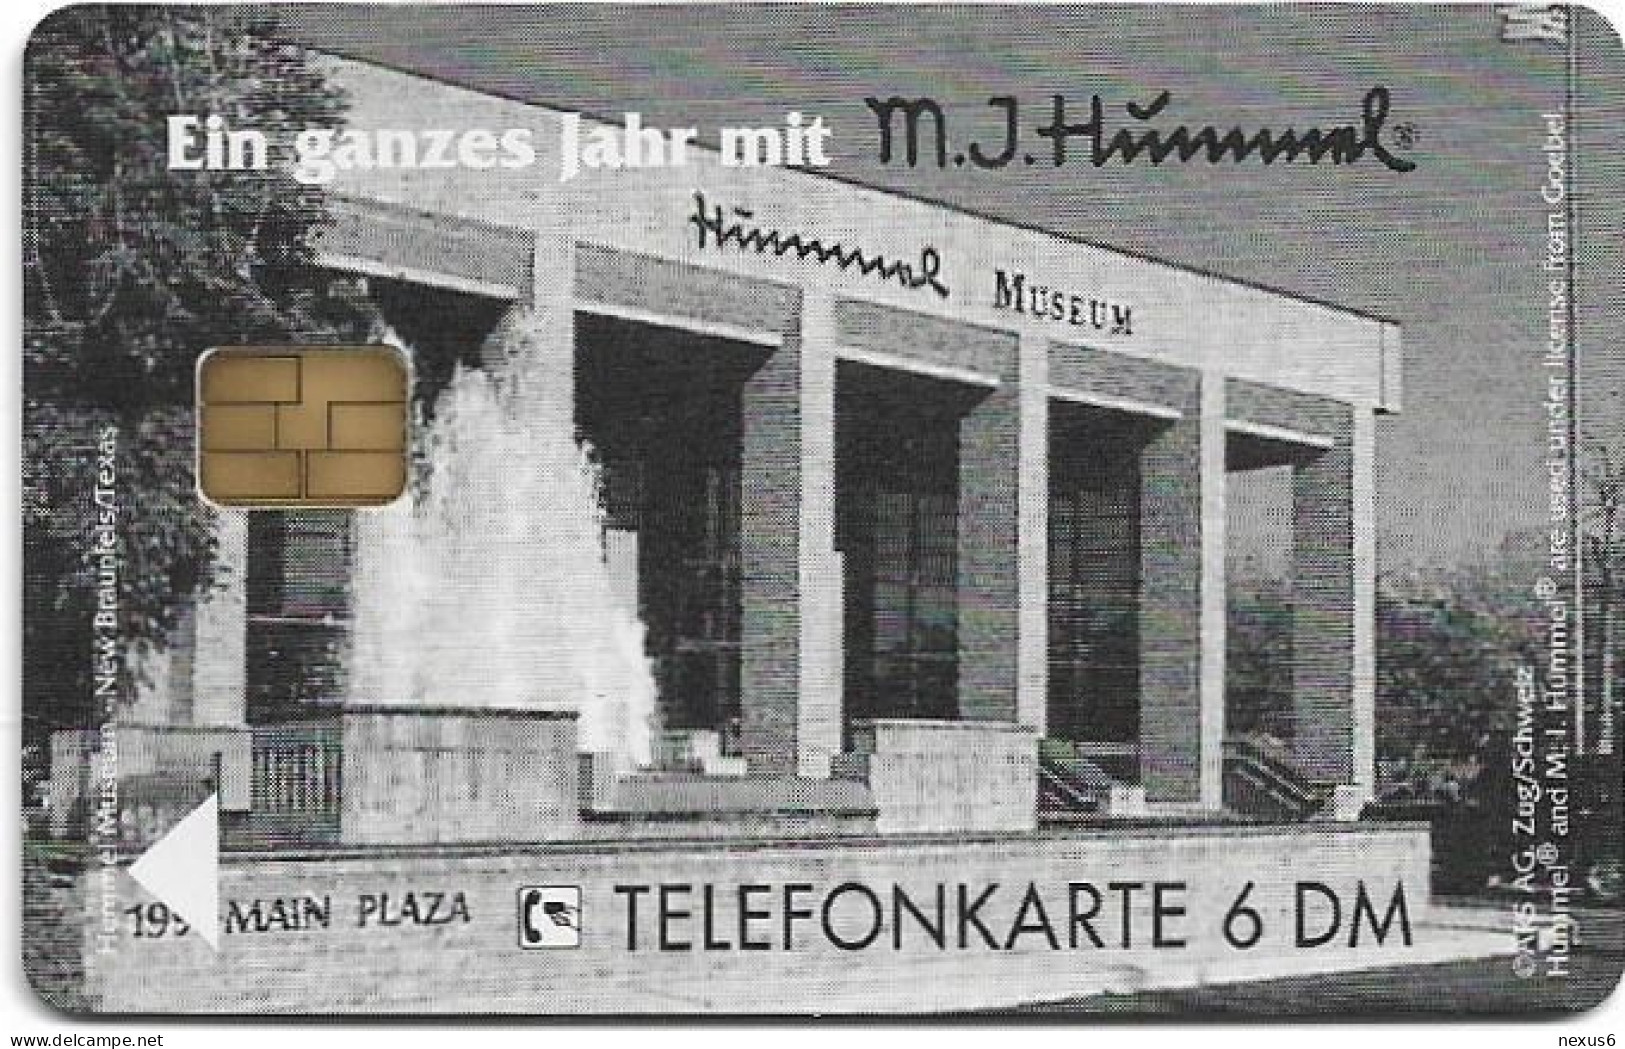 Germany - Hummel Museum 3 - Ringelreihe - O 1268 - 07.1994, 6DM, 5.000ex, Mint - O-Series: Kundenserie Vom Sammlerservice Ausgeschlossen